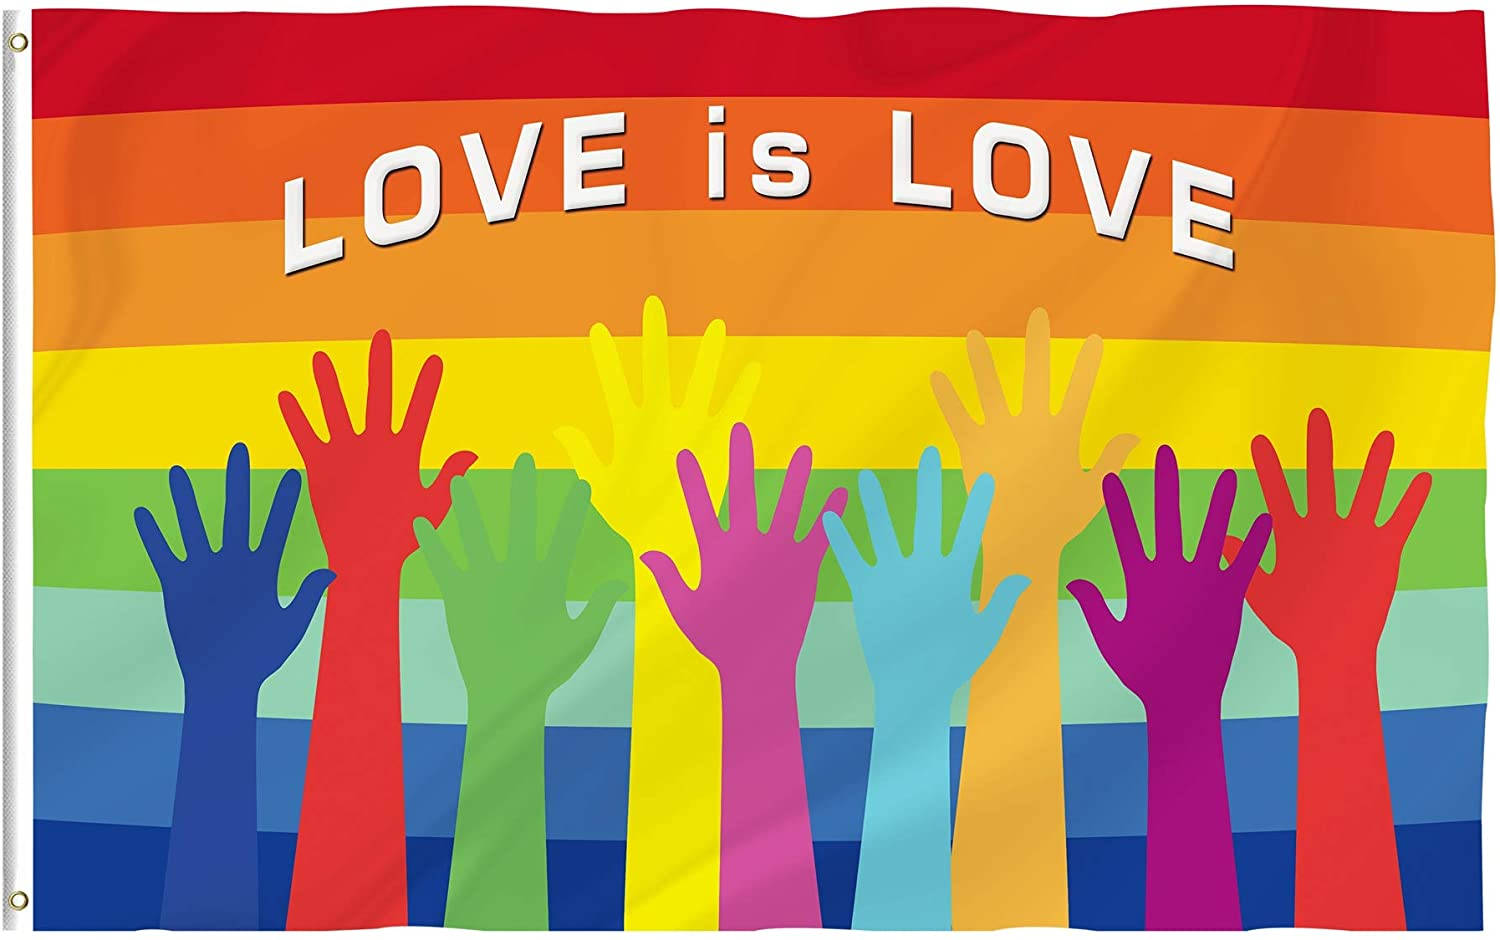 Liebeist Liebe Gleichheit. Wallpaper